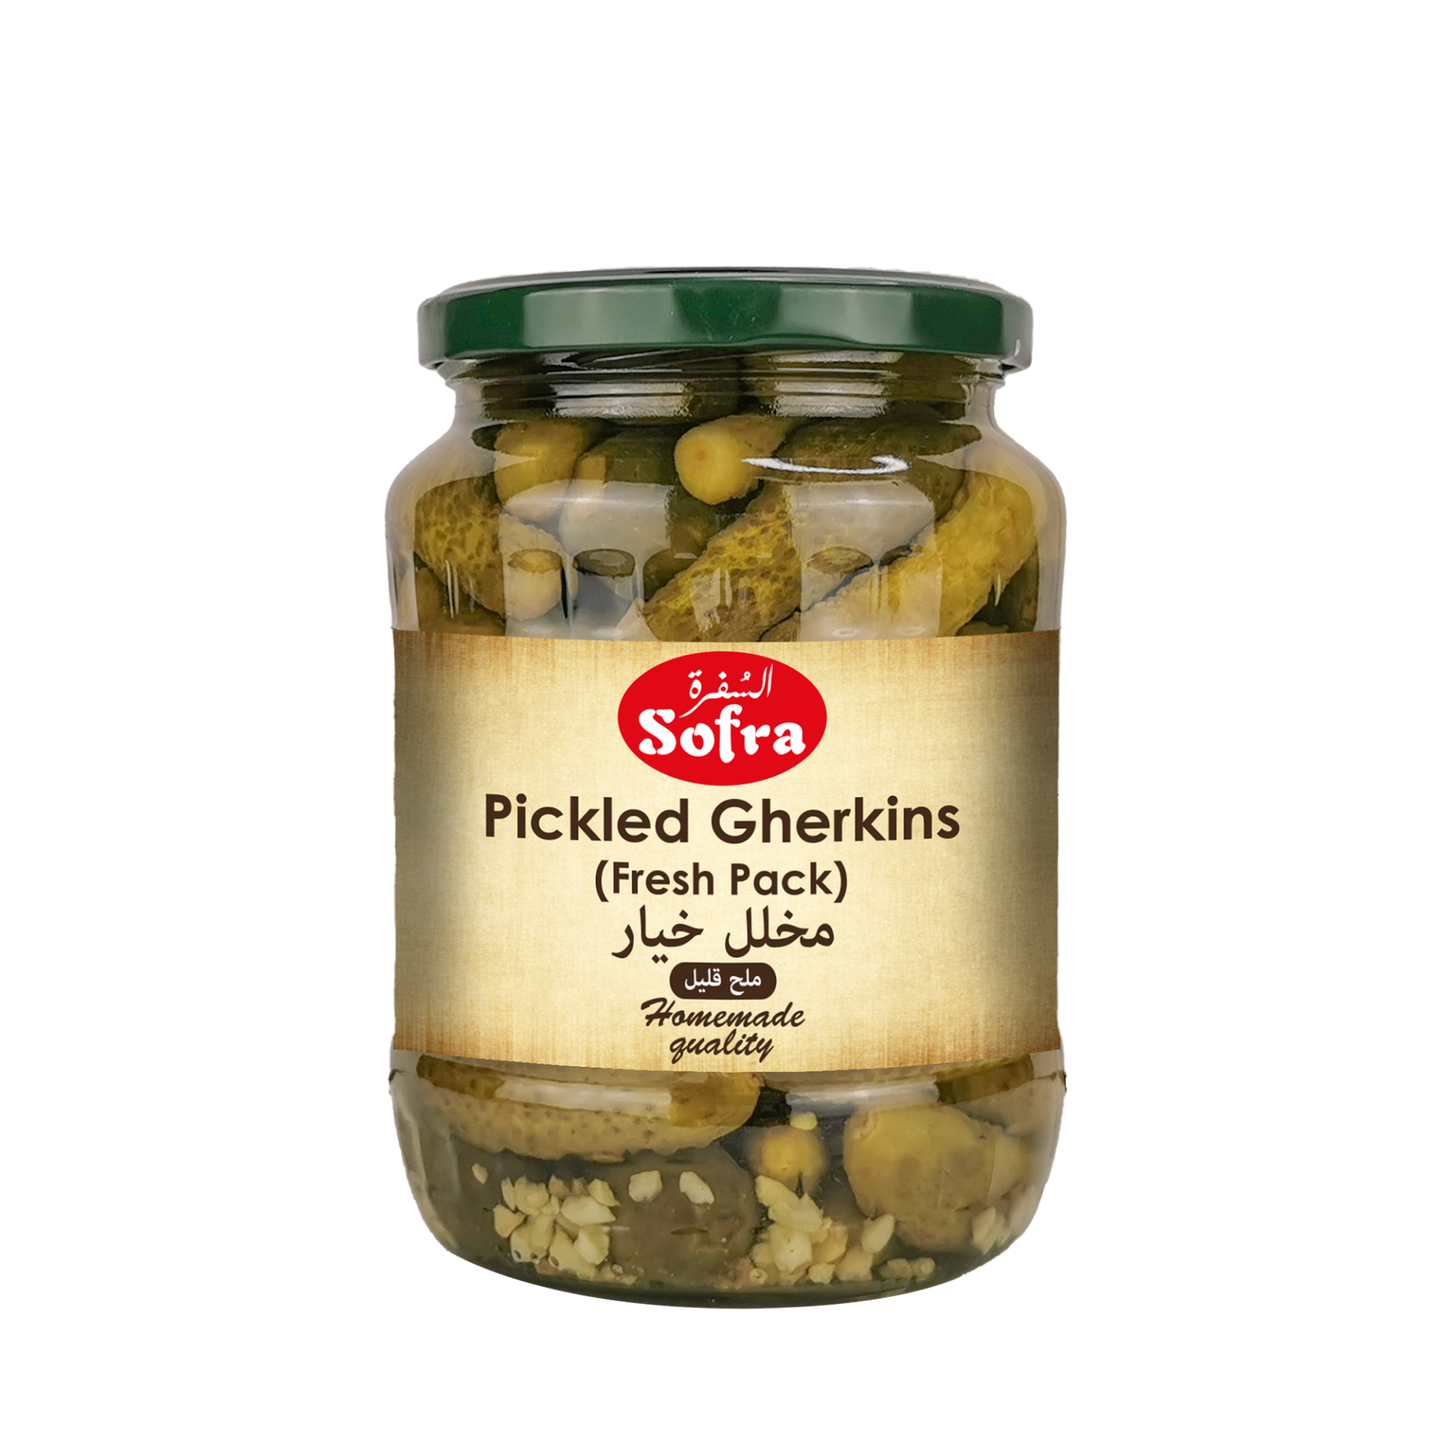 Sofra Baby Pickled Gherkins 680g